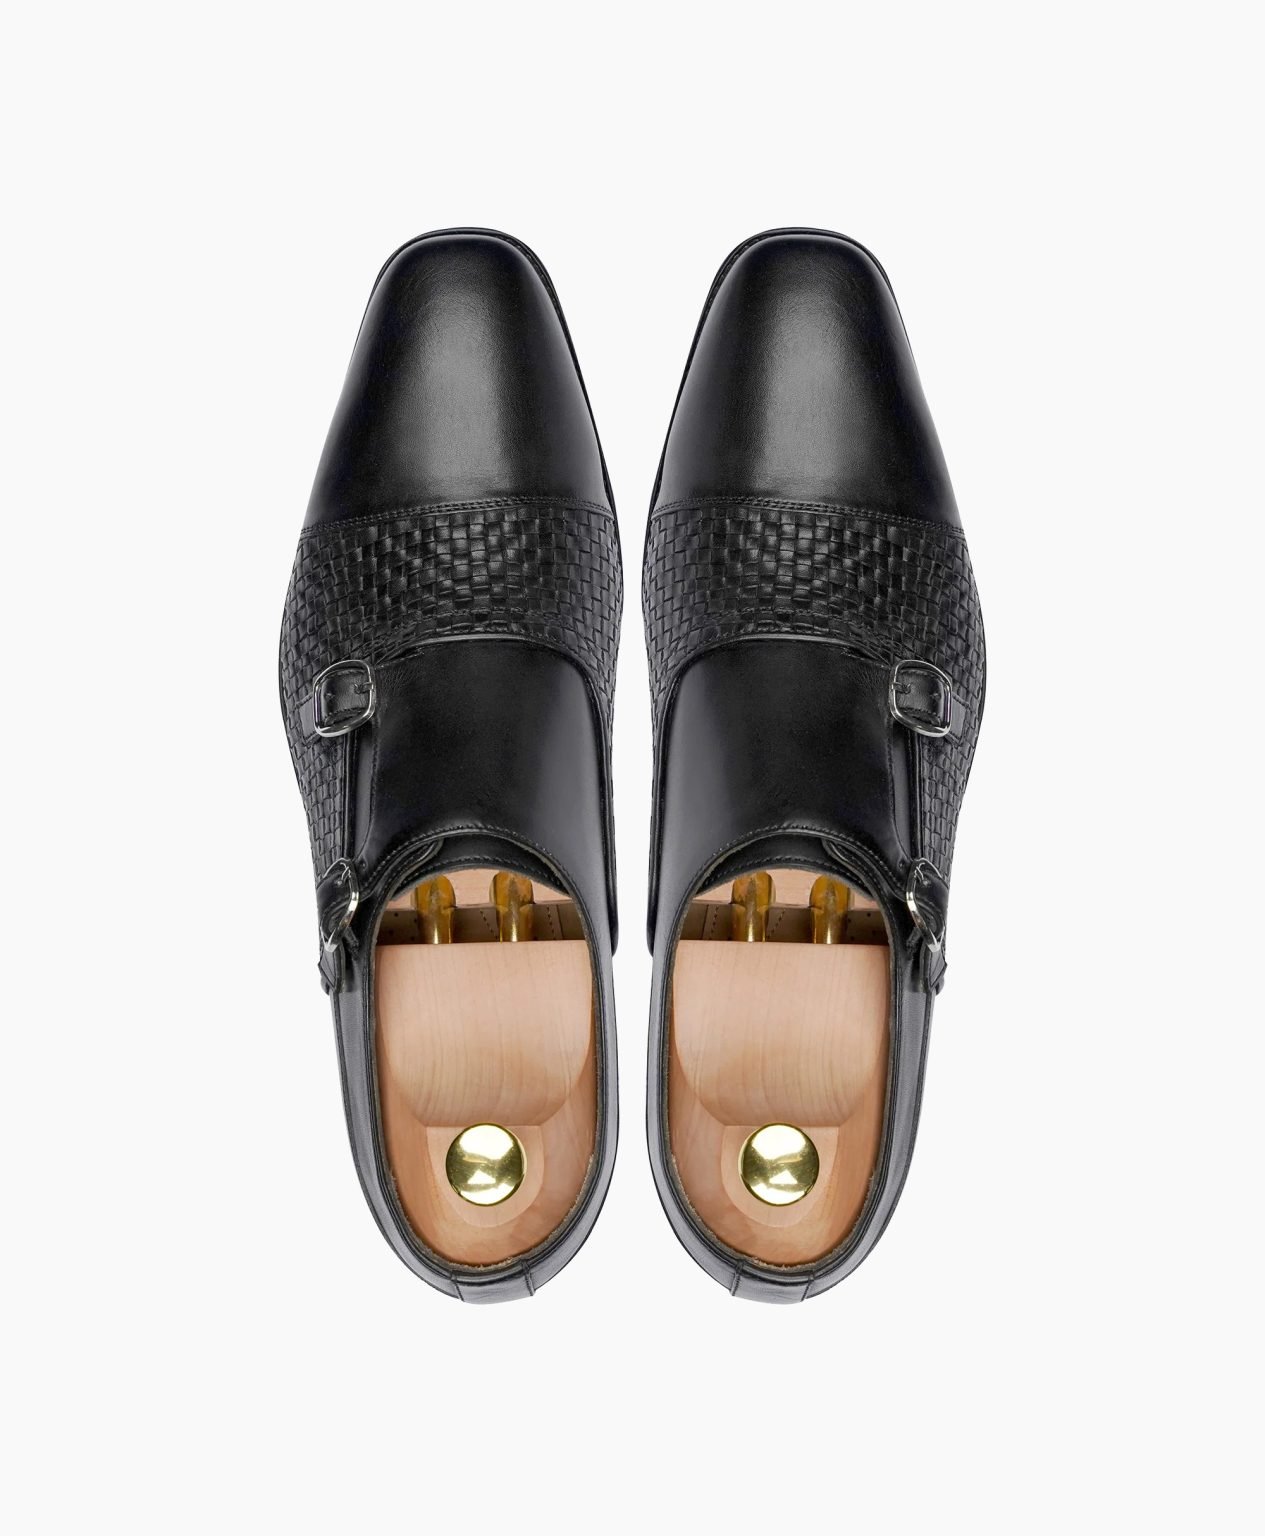 dawlish-double-monkstrap-black-leather-shoes-image202